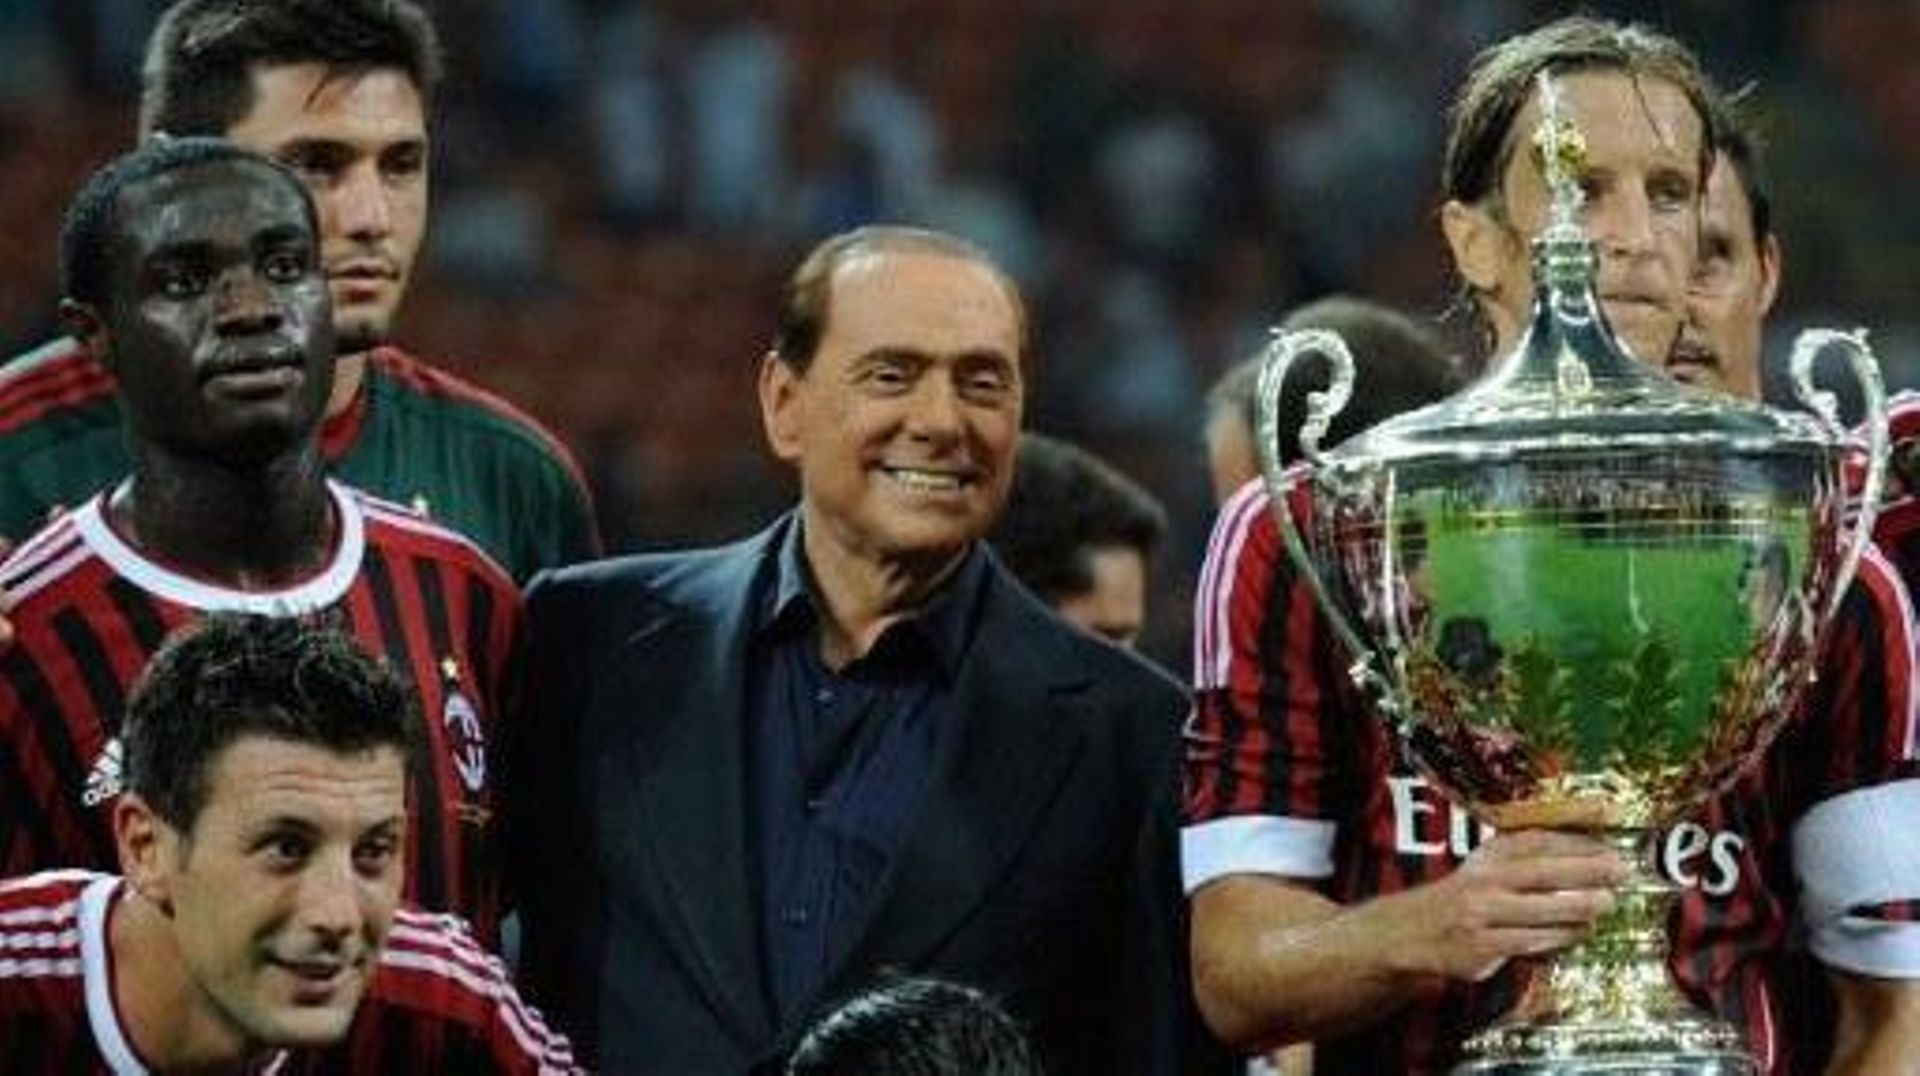 Il Milan, il Monza e il calcio italiano piangono la morte dell'”indimenticabile” Silvio Berlusconi